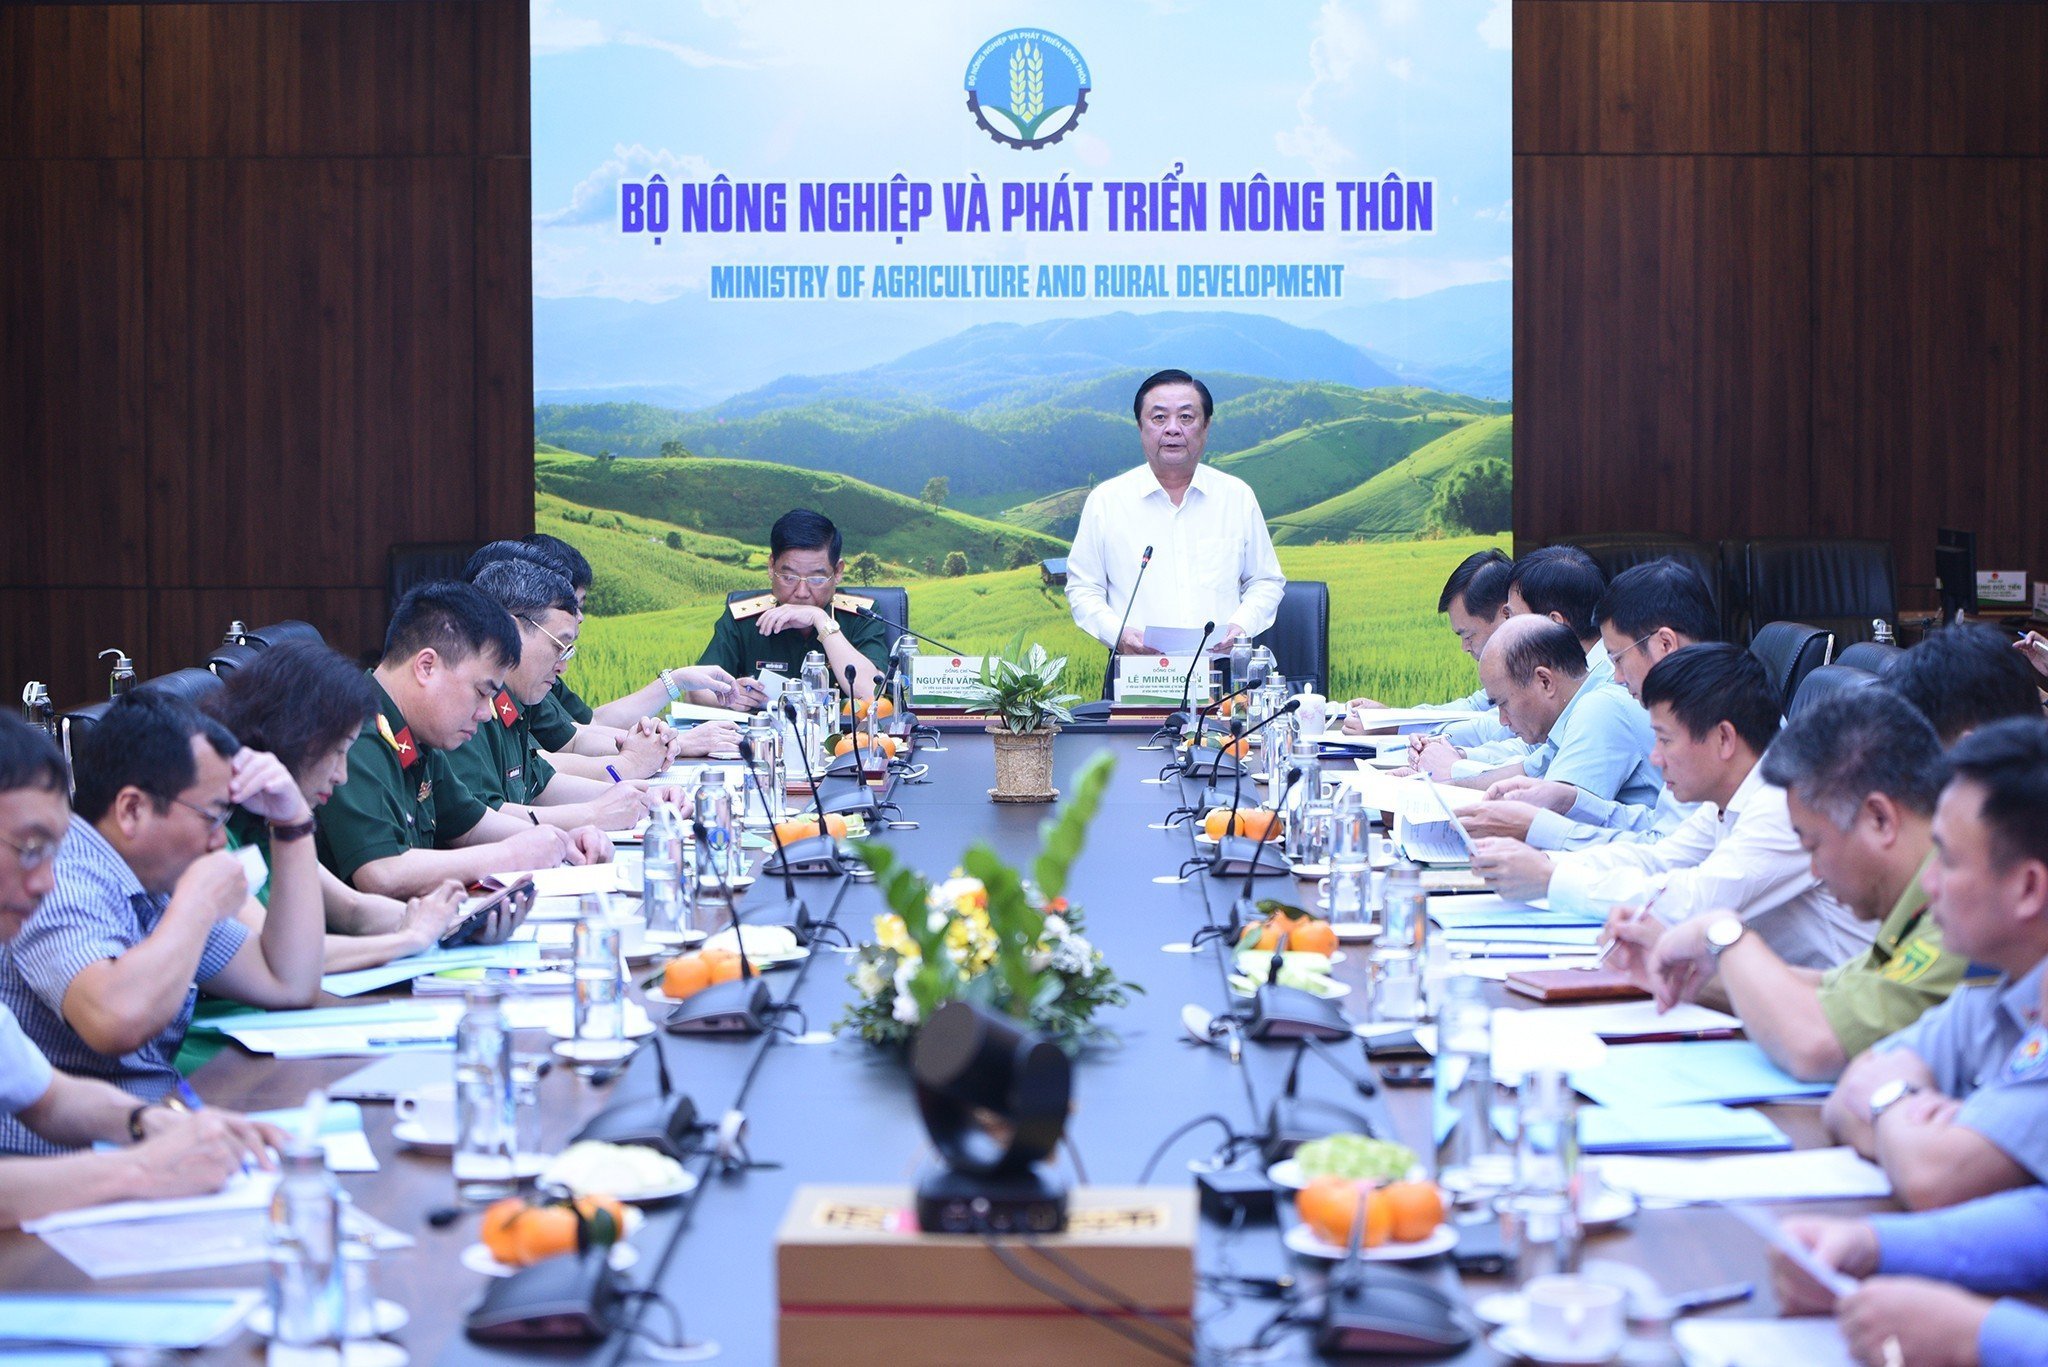 Bộ NN-PTNT có nhiều hoạt động, chương trình phát triển nông nghiệp, nông thôn gắn với bảo vệ Tổ quốc thời gian qua. Ảnh: Tùng Đinh.